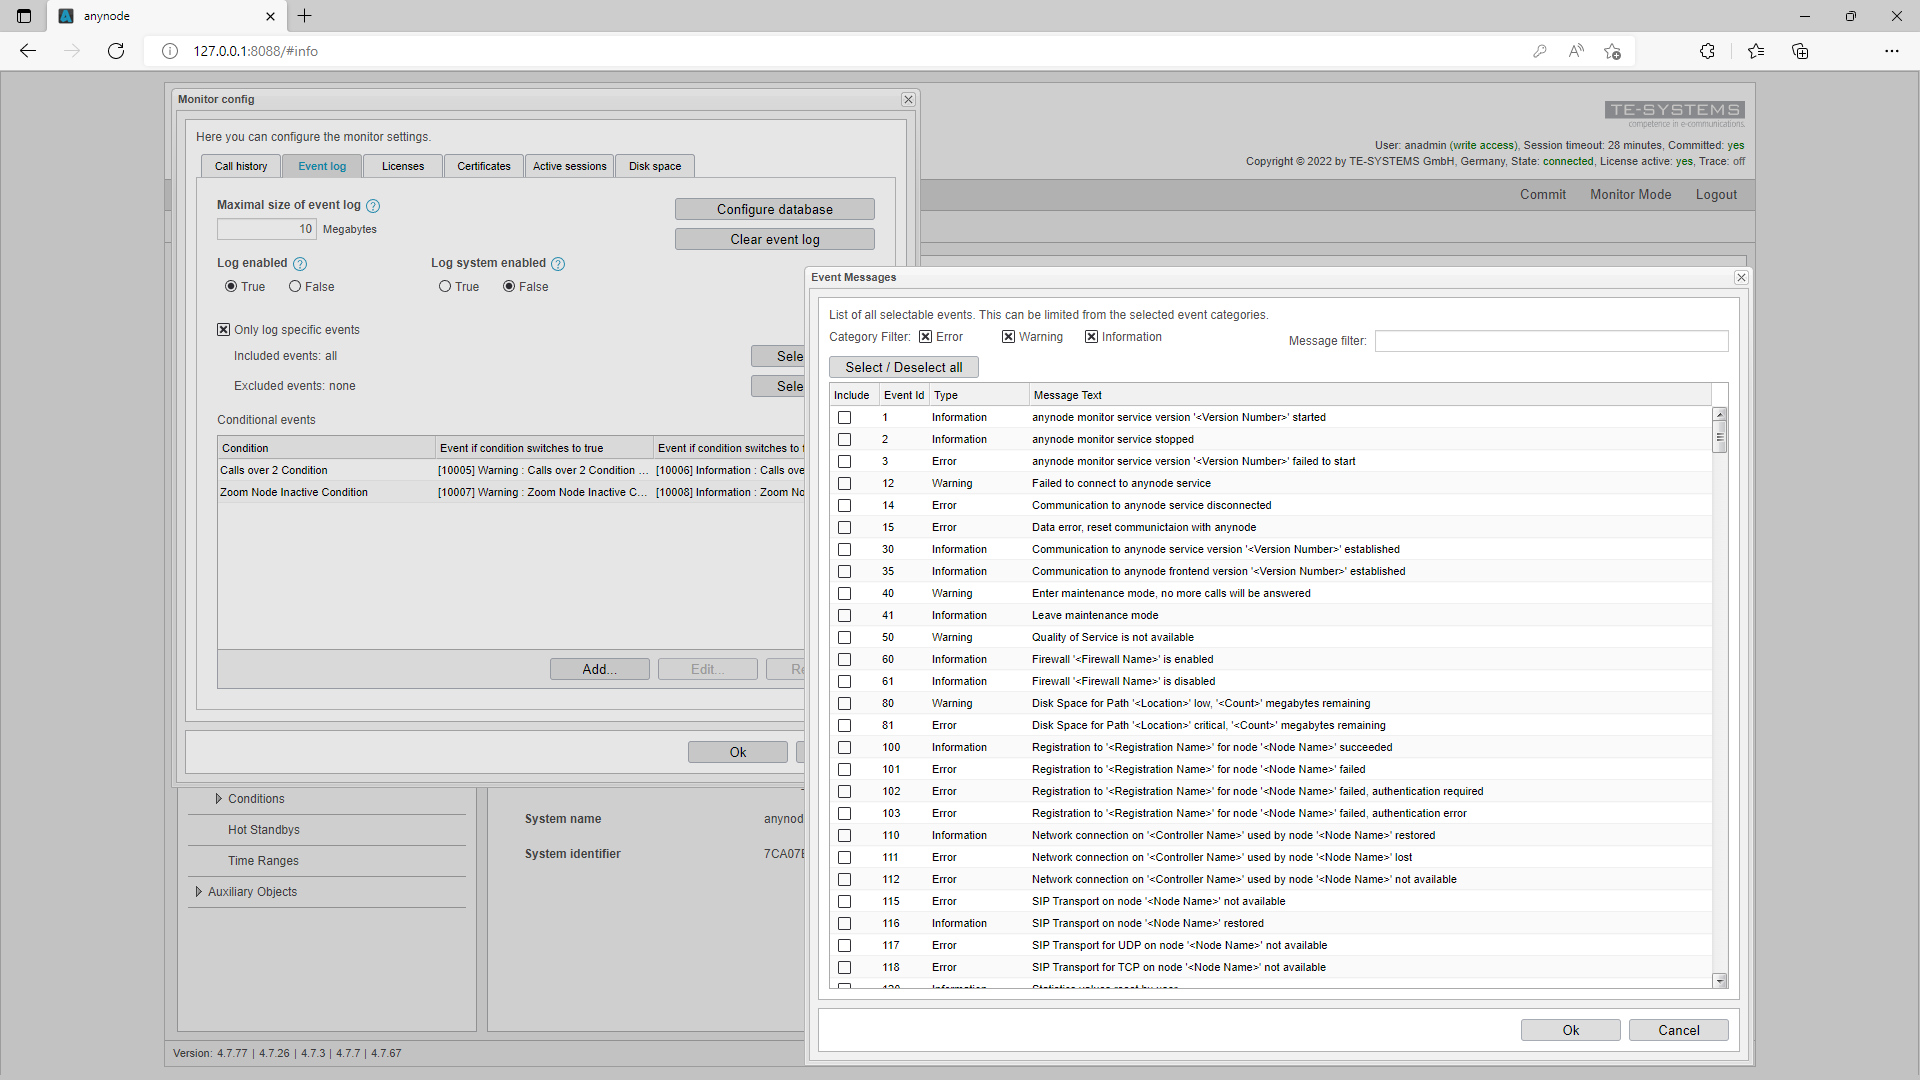 Screeenshot: Configuración del registro de eventos en el monitor con una lista de eventos seleccionables.